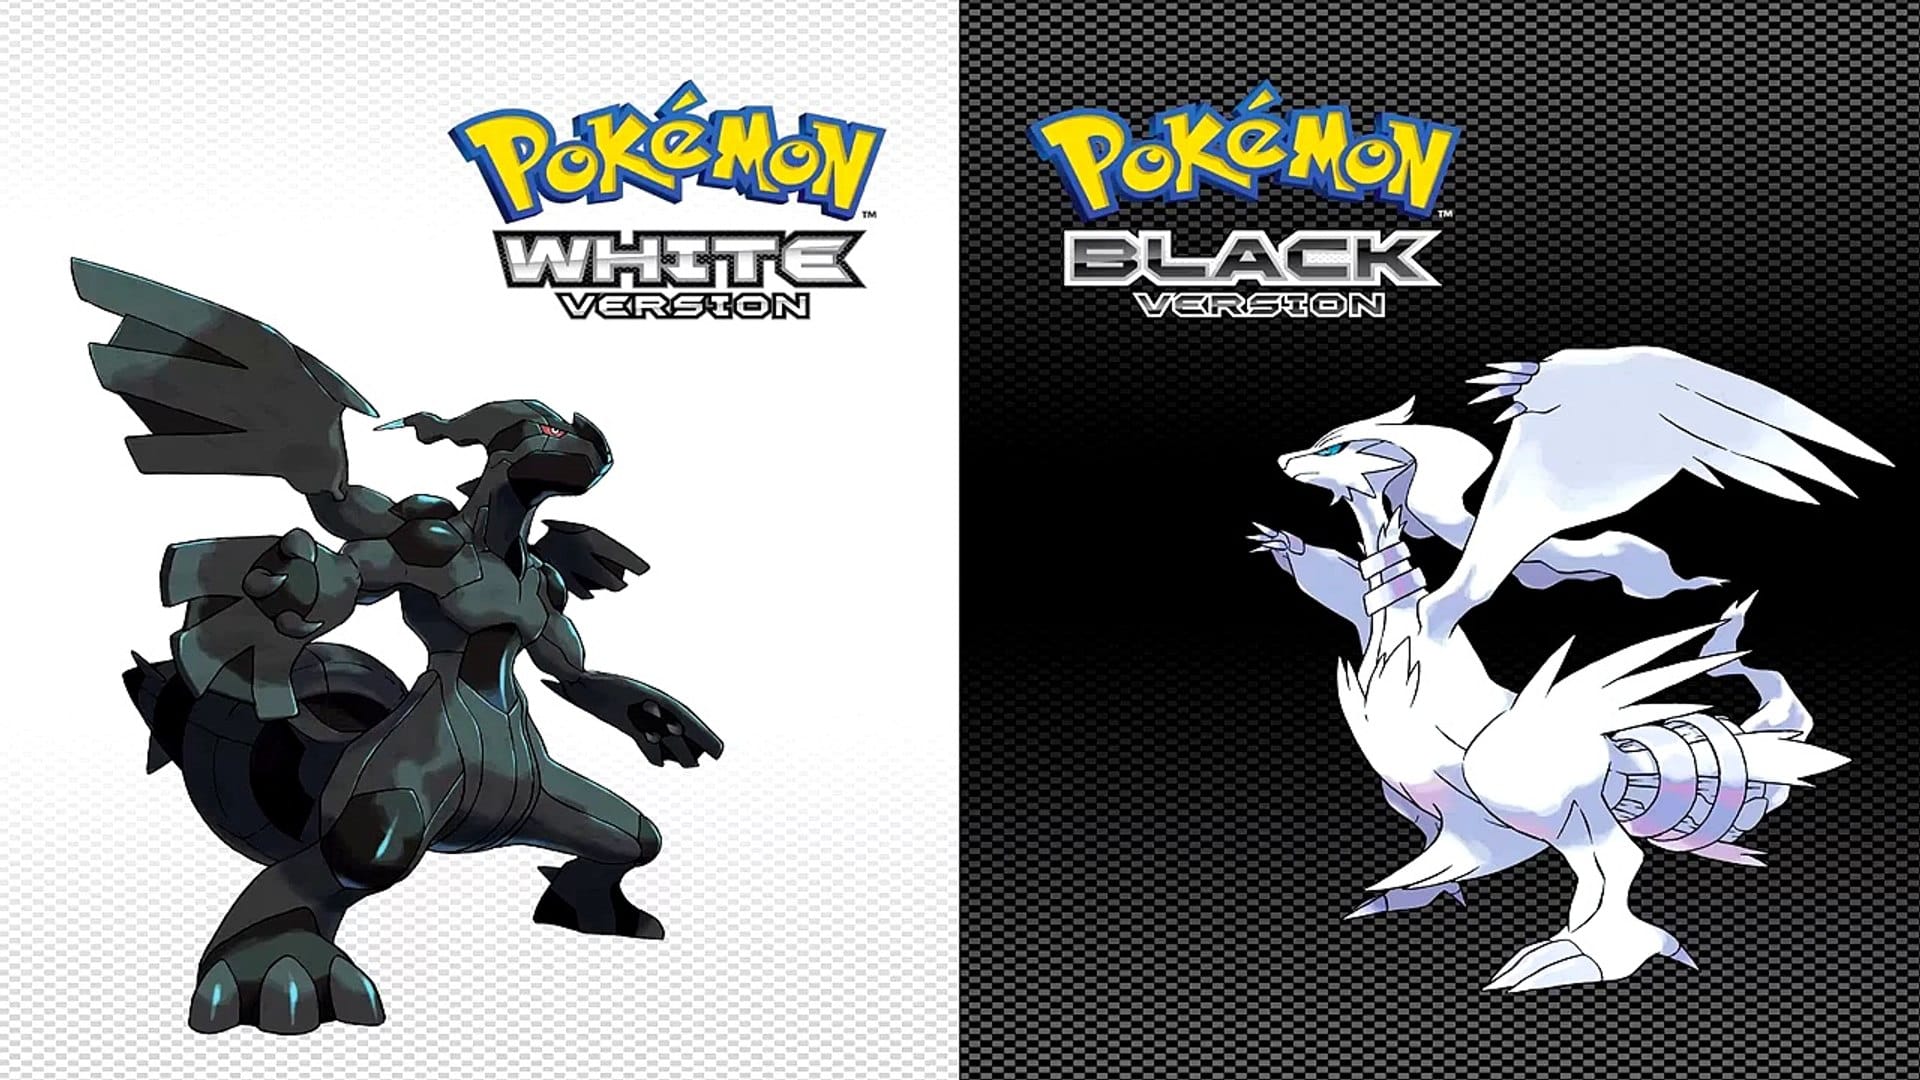 Pokémon Black, White Starters Revealed - Game Informer